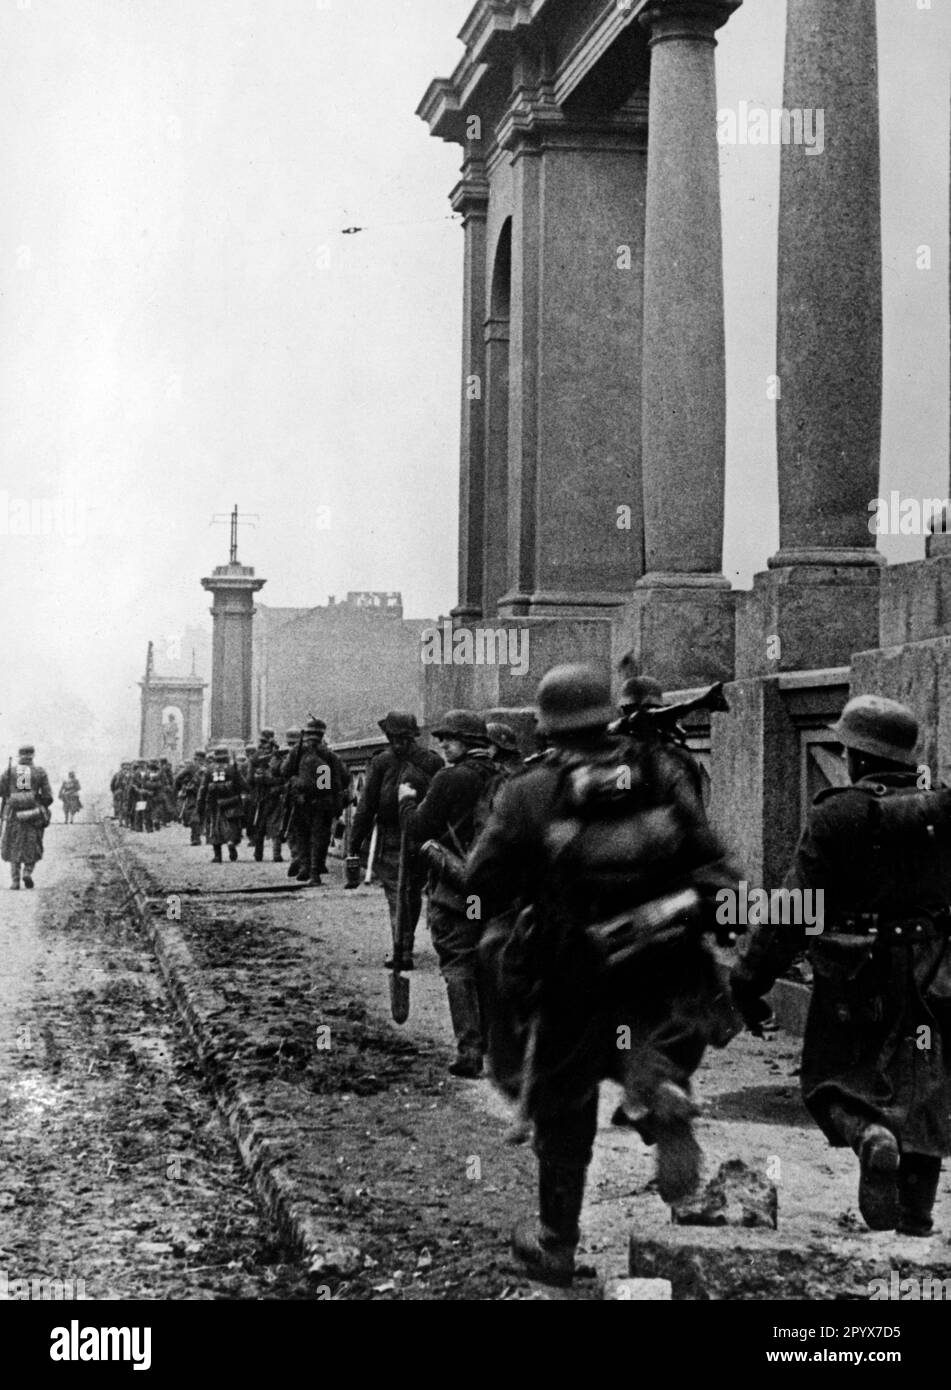 Groupe de l'armée allemande Sud pendant la capture de Kharkov (Kharkiv), Ukraine. Photo: Mittelstaedt [traduction automatique] Banque D'Images